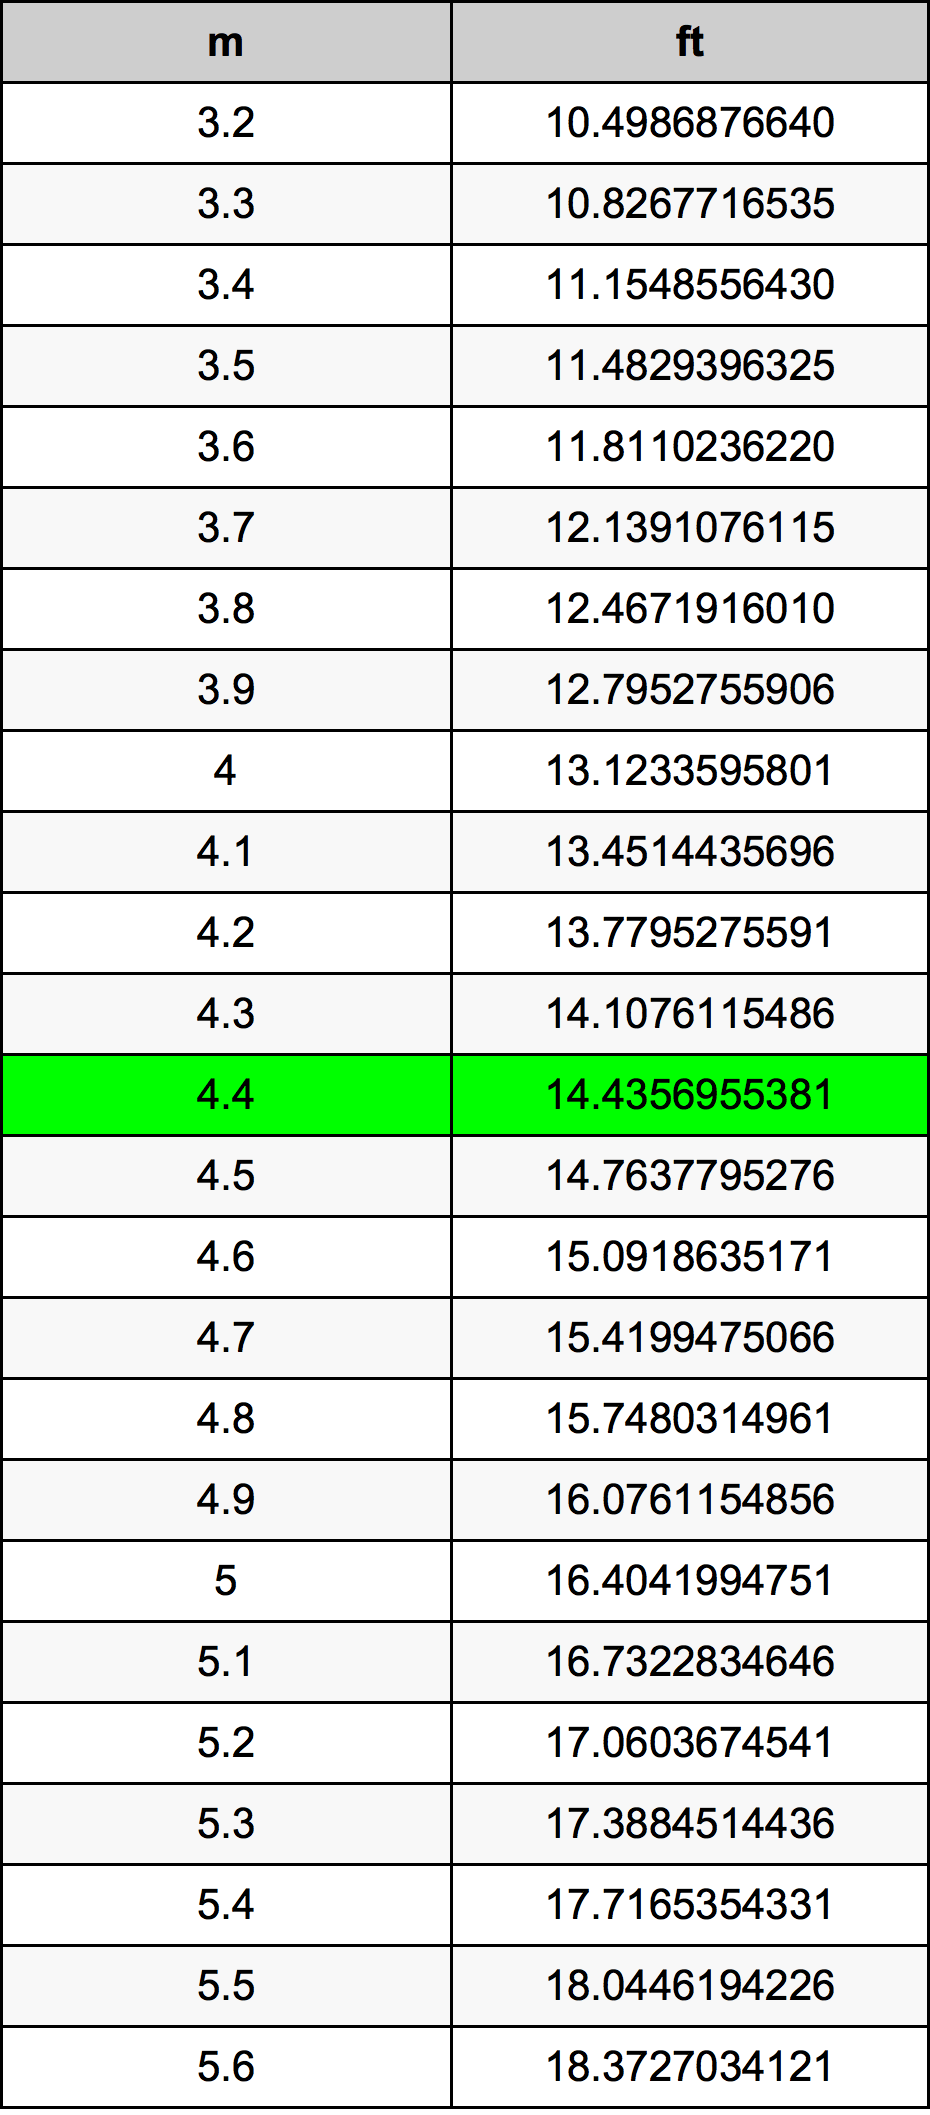 4.4 Metru tabelul de conversie